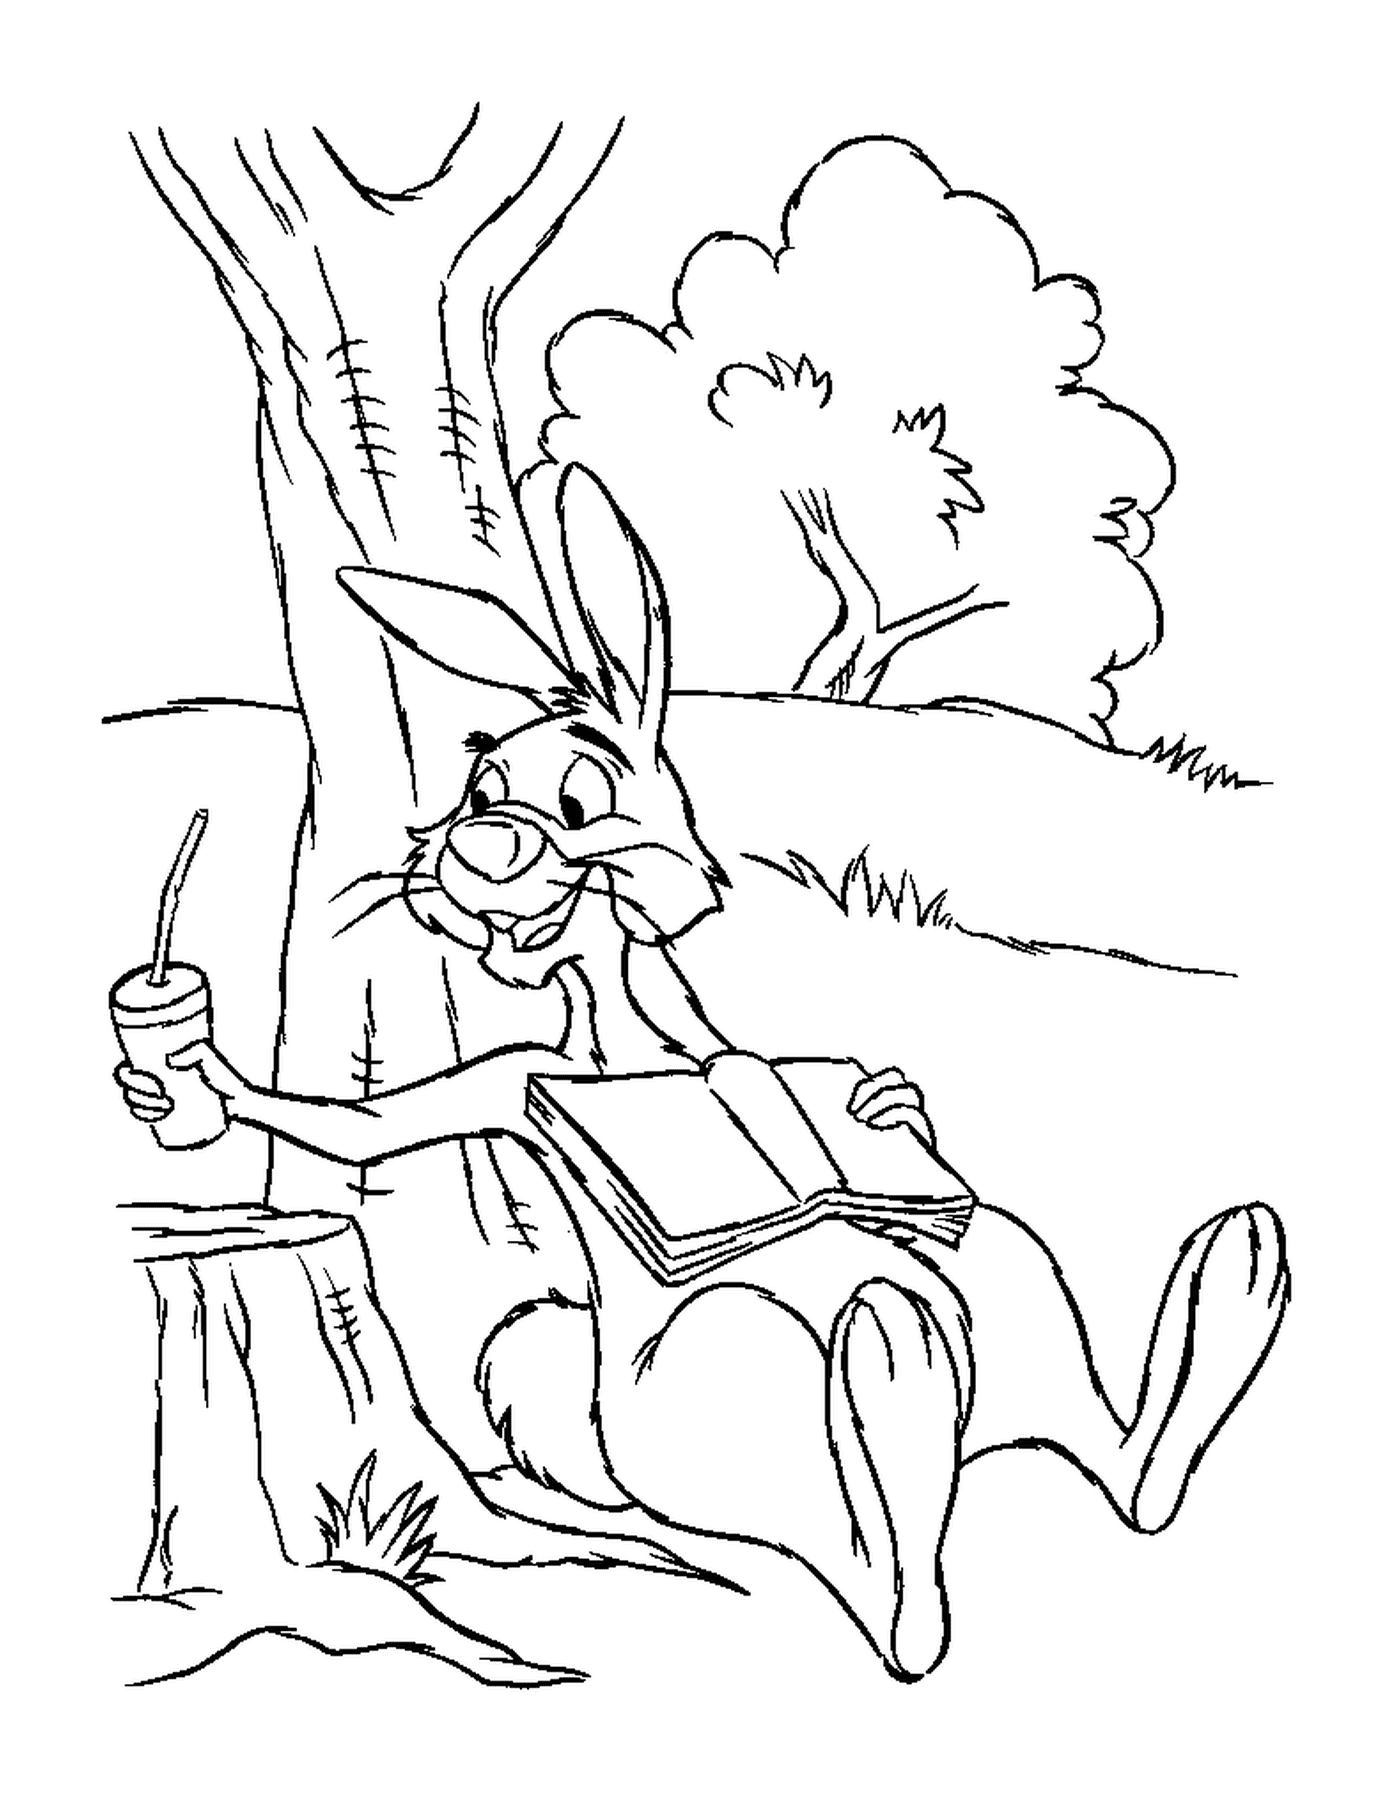  Um coelho sentado em um toco perto de uma árvore com suco de cenoura 